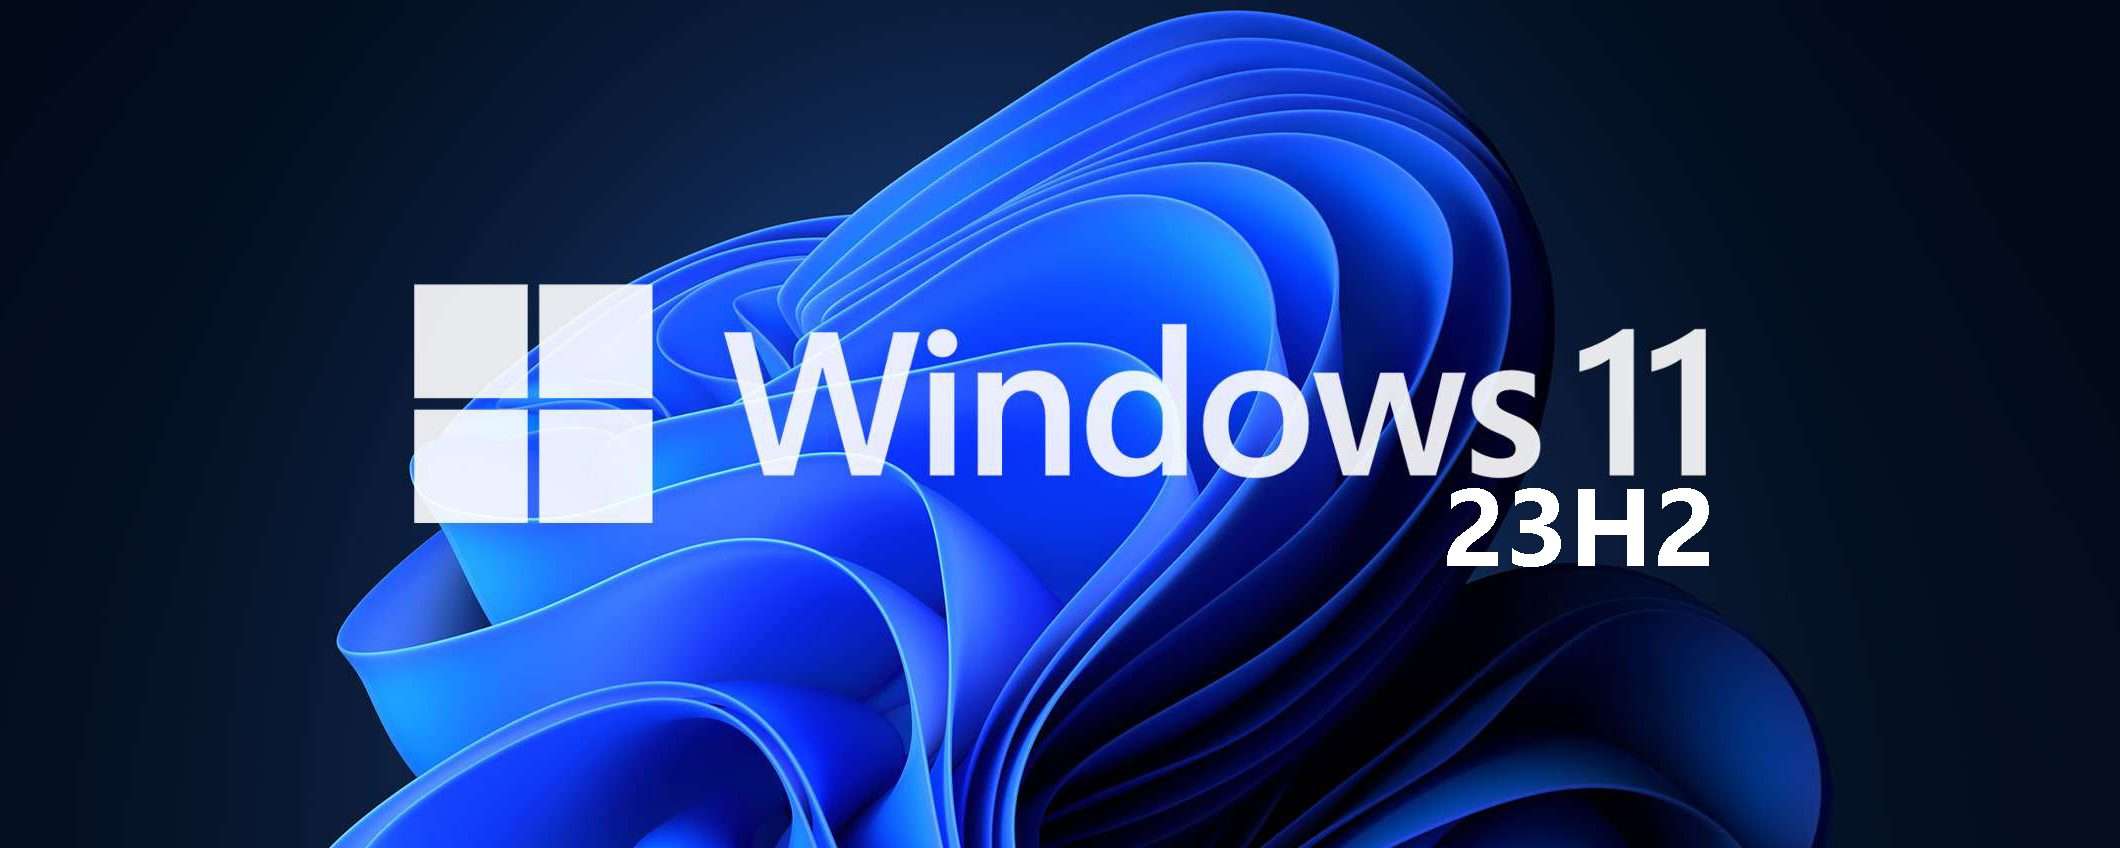 Windows 11 23H2: disponibile la Release Preview